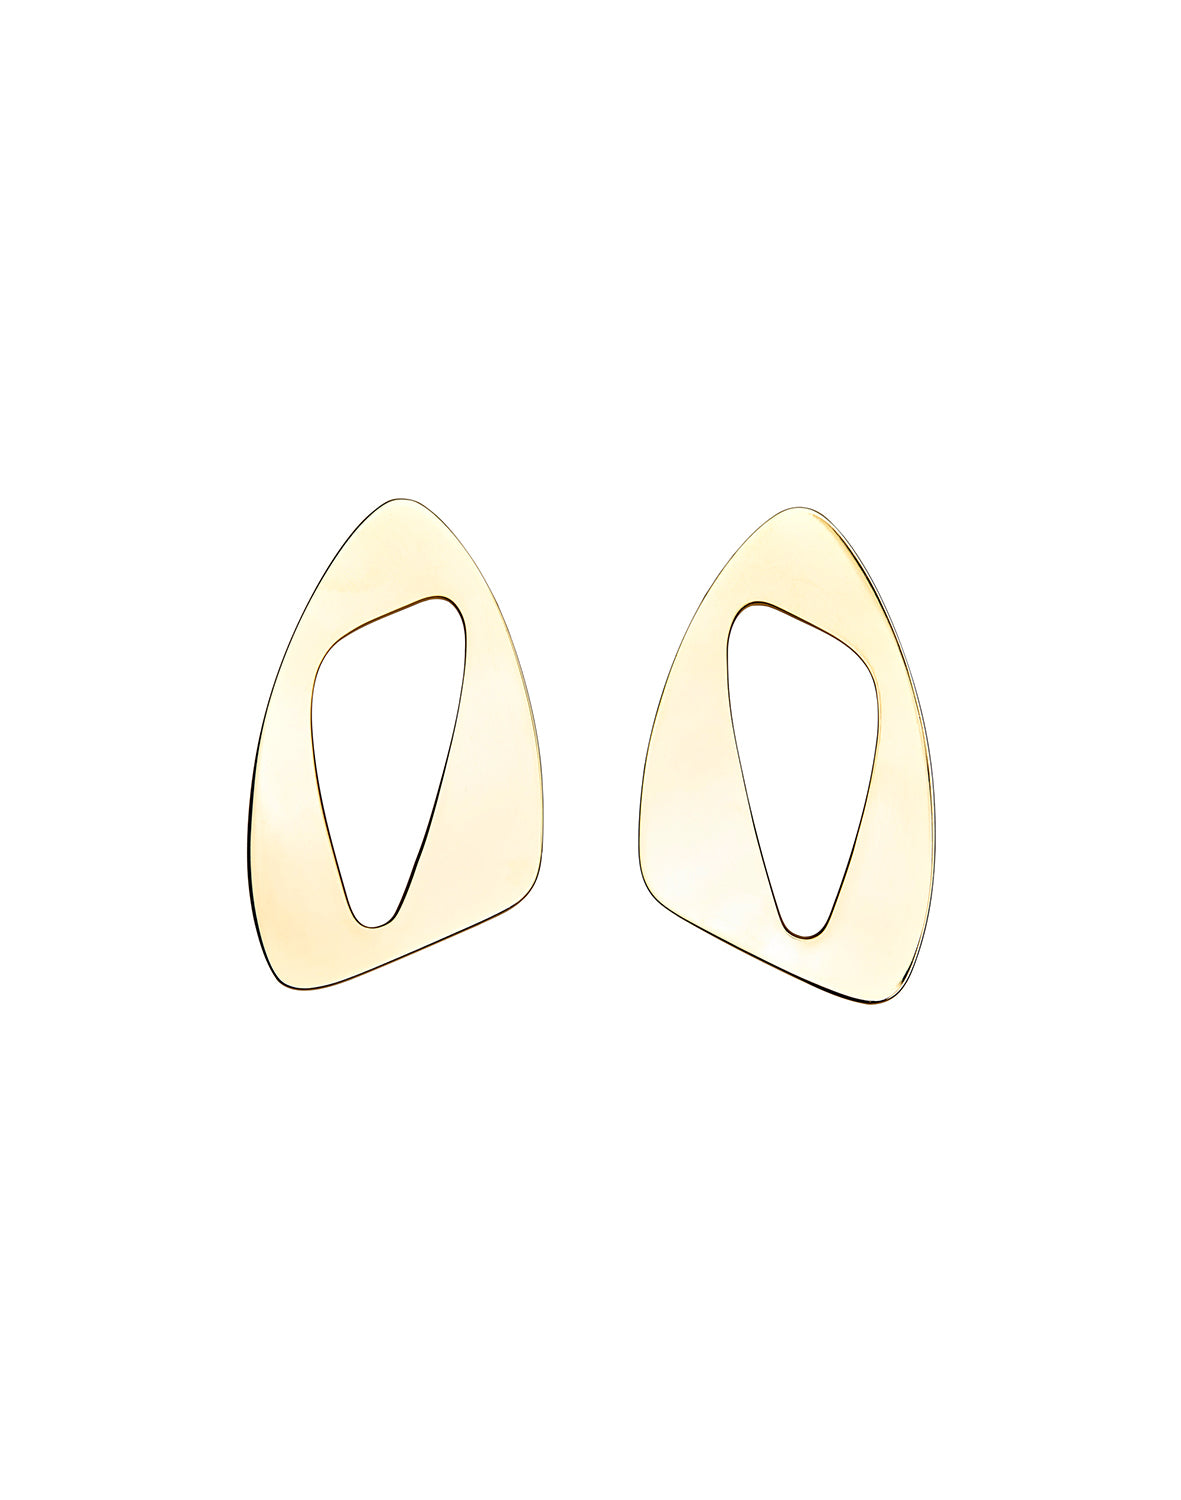 Amorphous Extruded Earrings